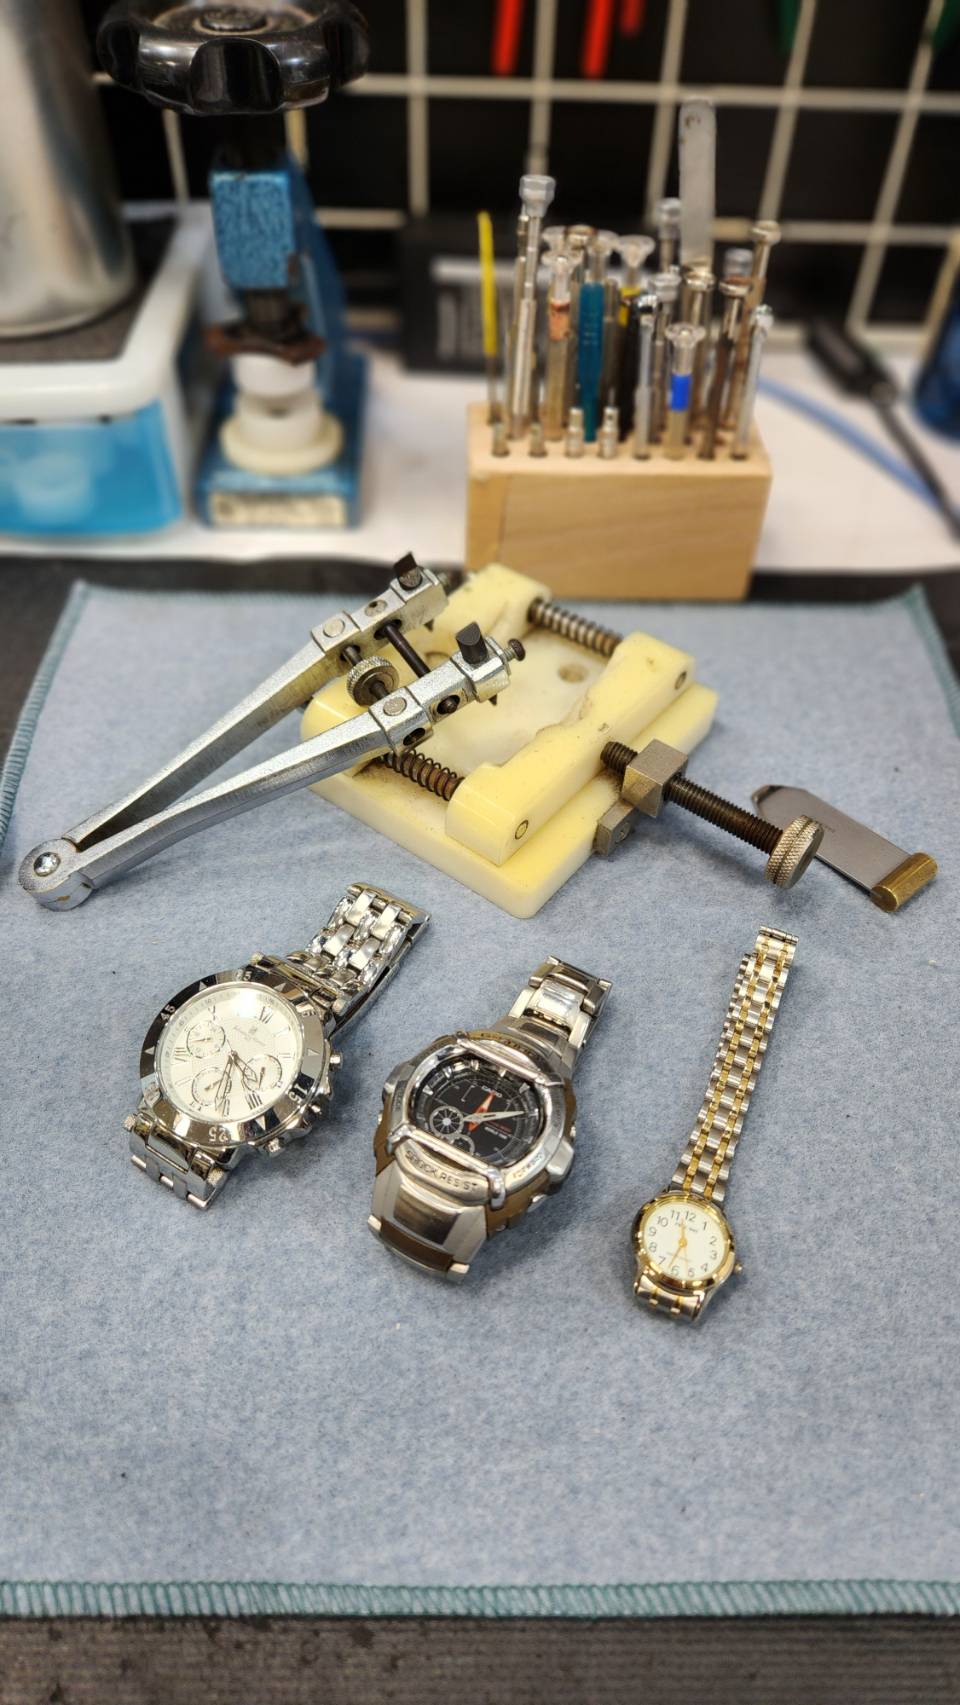 腕時計電池交換用の専用器具・工具と腕時計電池交換修理完了後の腕時計